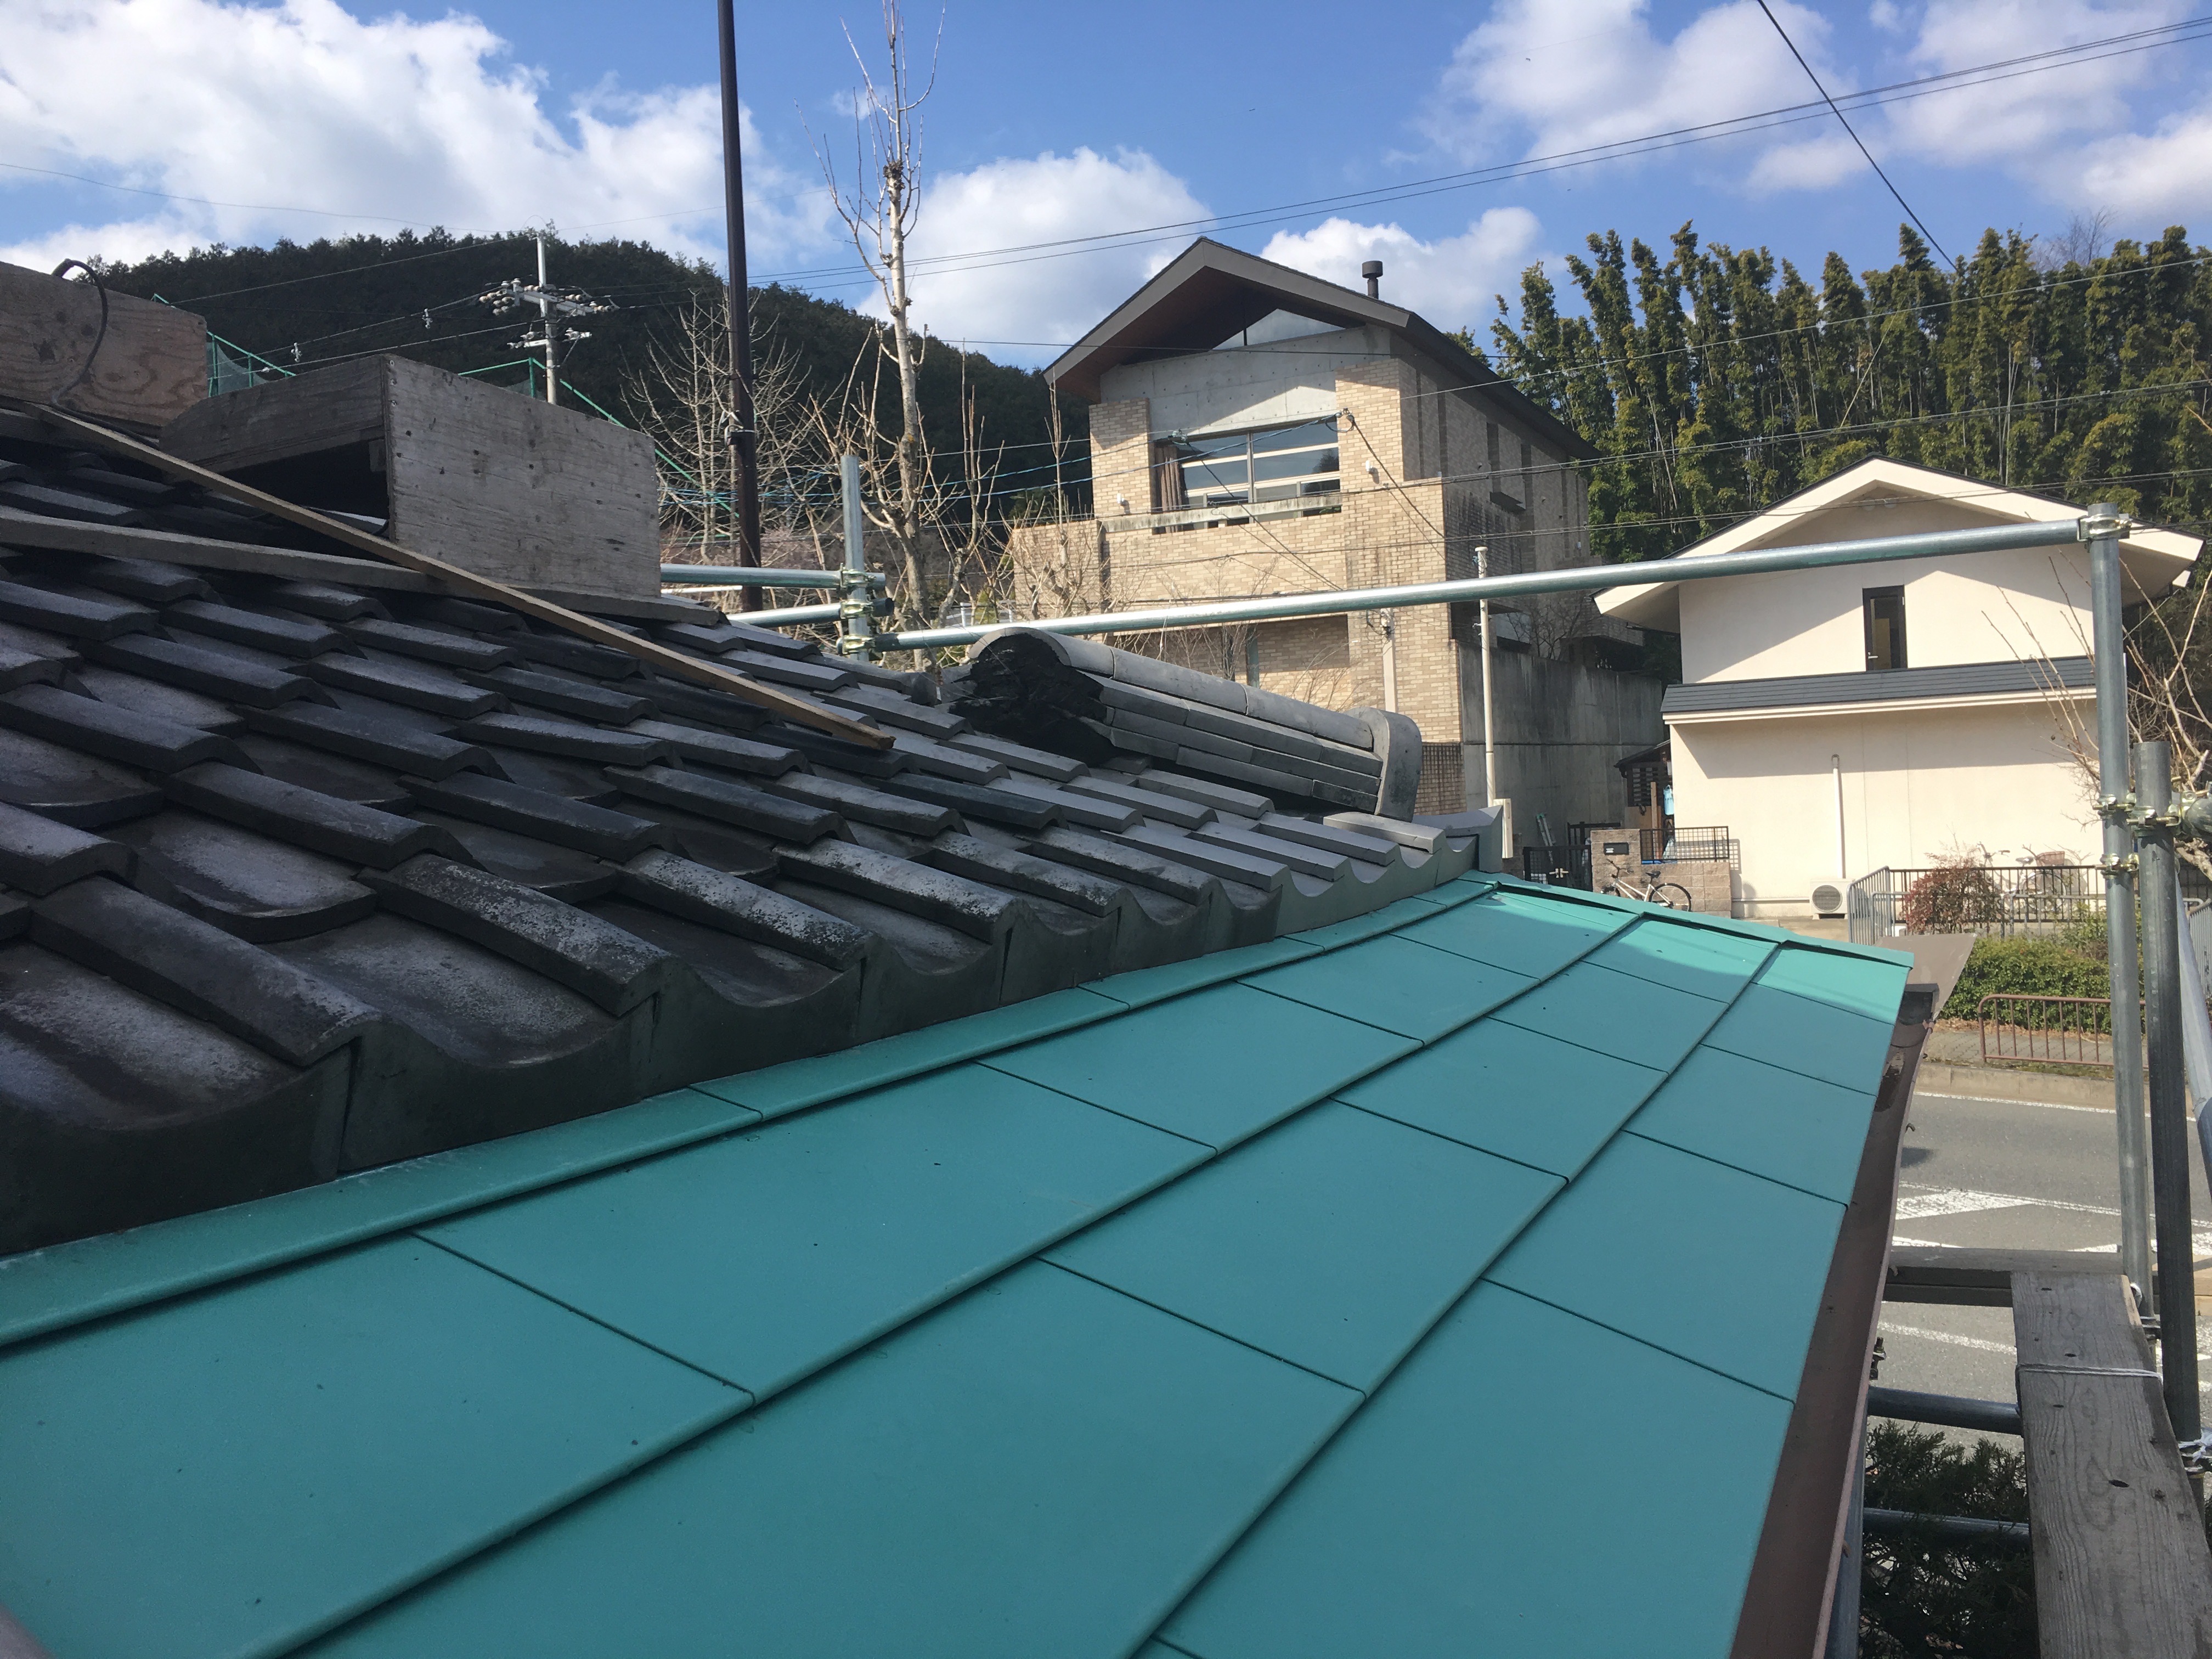 【岩倉幡枝】屋根の雪害の復旧工事からのぉ…銅板からガルバリウム鋼板へ取替え